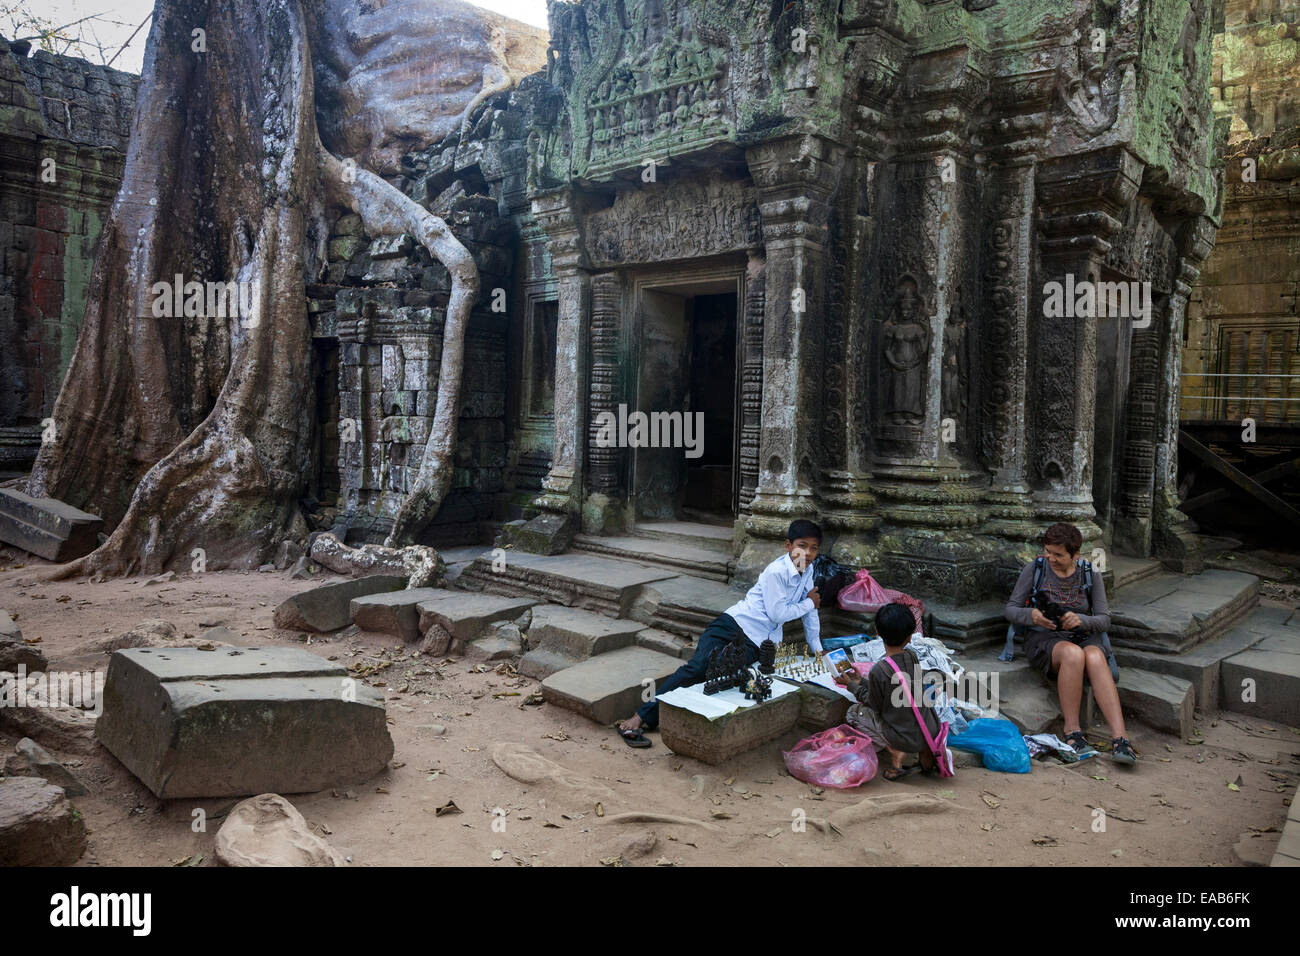 Kambodscha.  Ta Prohm Tempel Ruinen, 12.-13.. Jahrhundert.  Jungen mit Souvenirs, Schmuck und Postkarten. Stockfoto